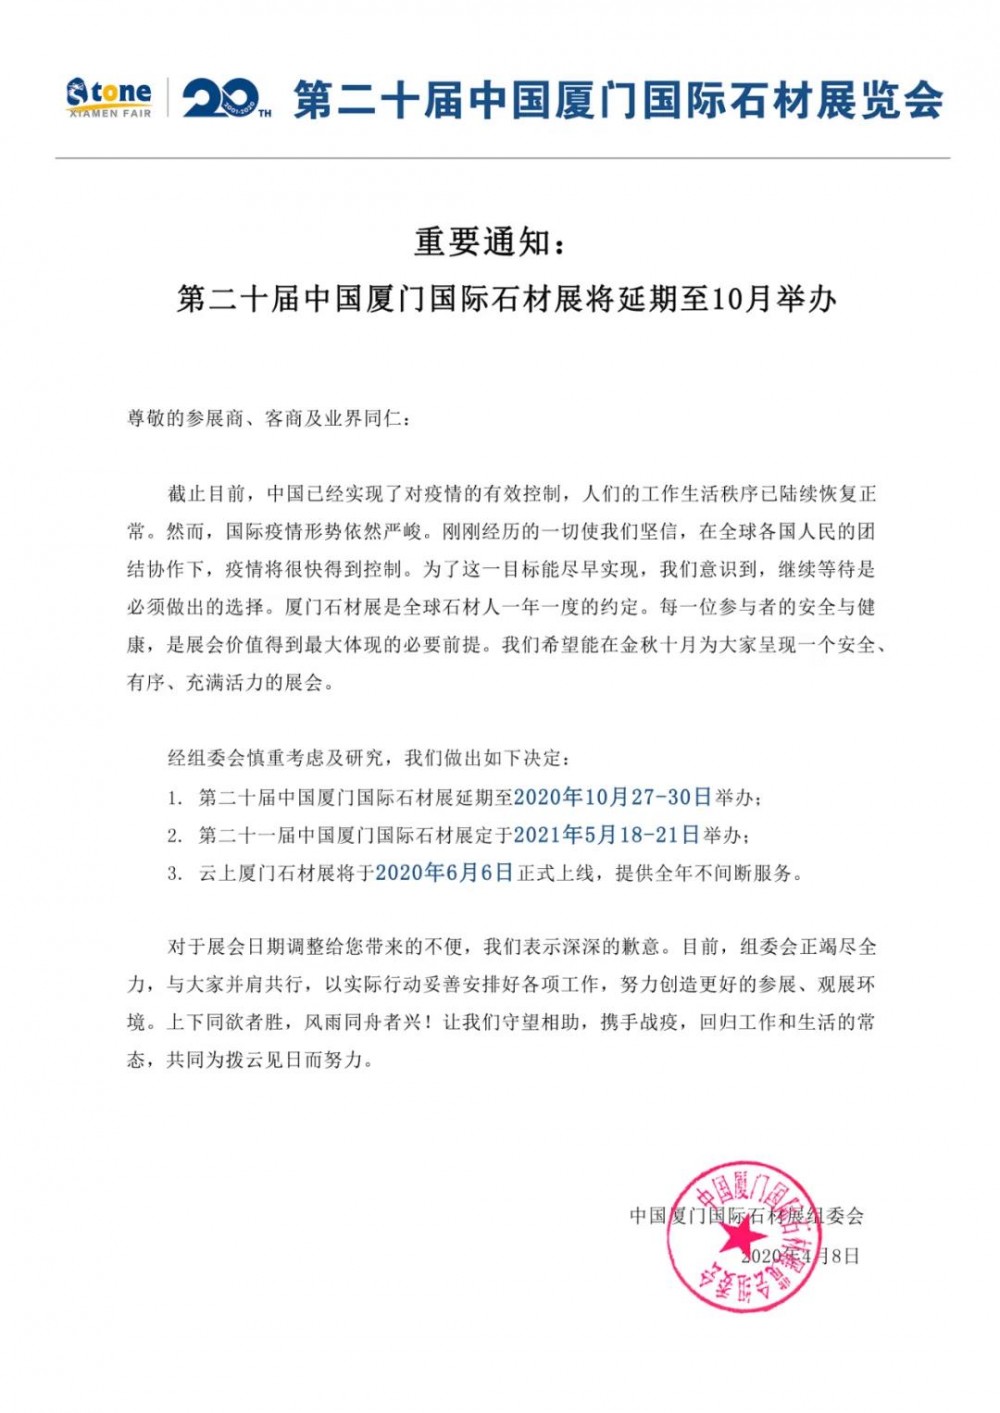 重要通知：第二十届中国厦门国际石材展将延期至10月举办 中文源文件